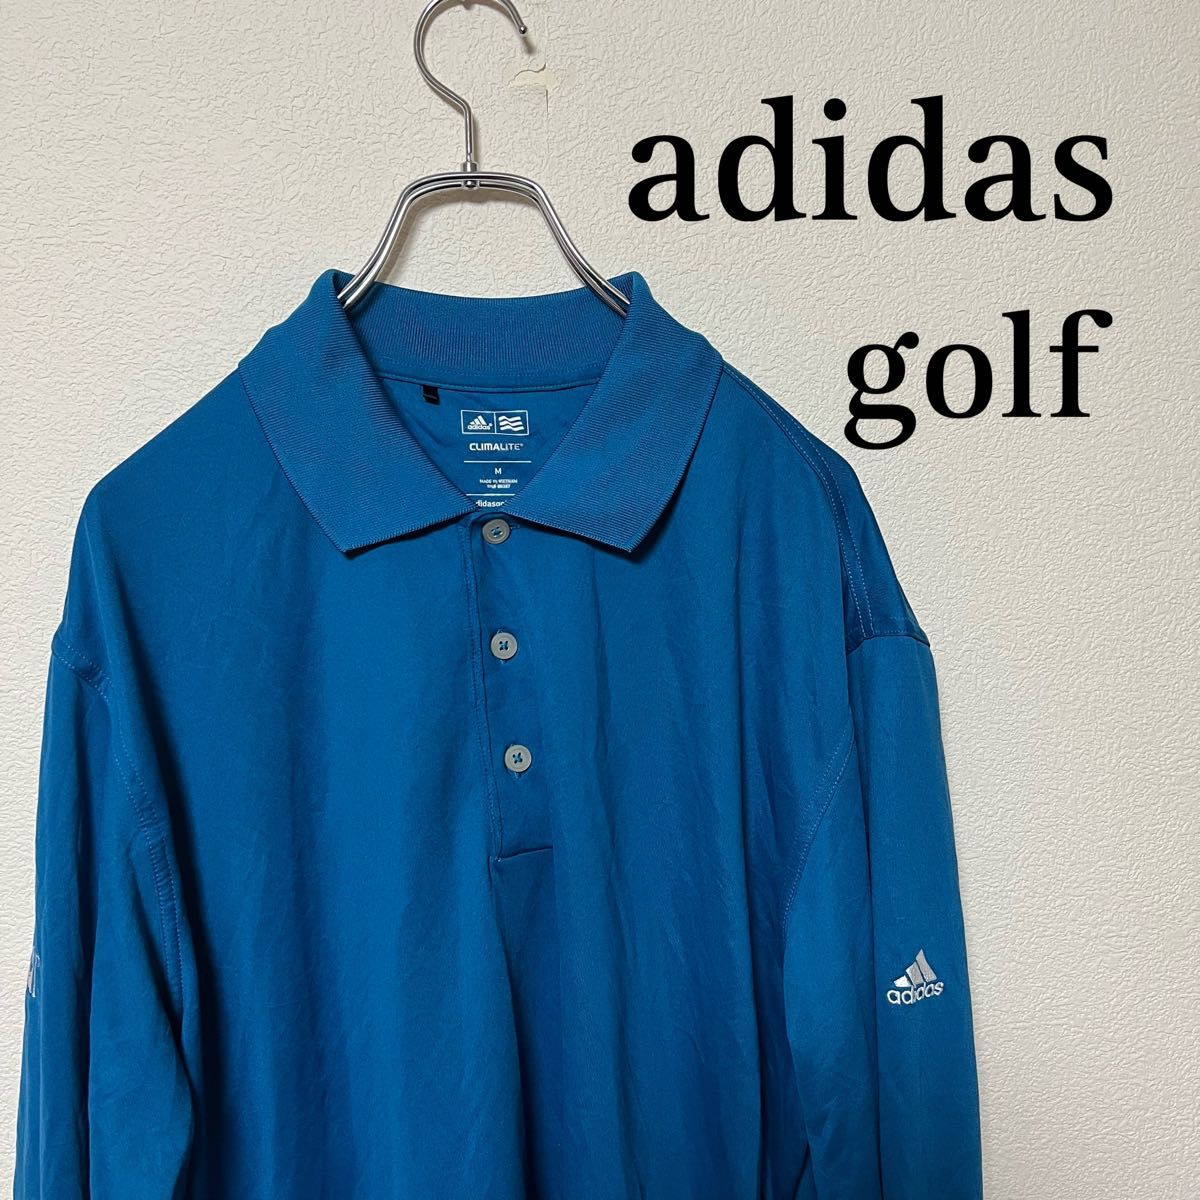 【レア】adidas アディダス ポロシャツ 長袖 刺繍 ラガーシャツ ブルー系 アメリカ 長袖シャツ GOLF ゴルフポロシャツ